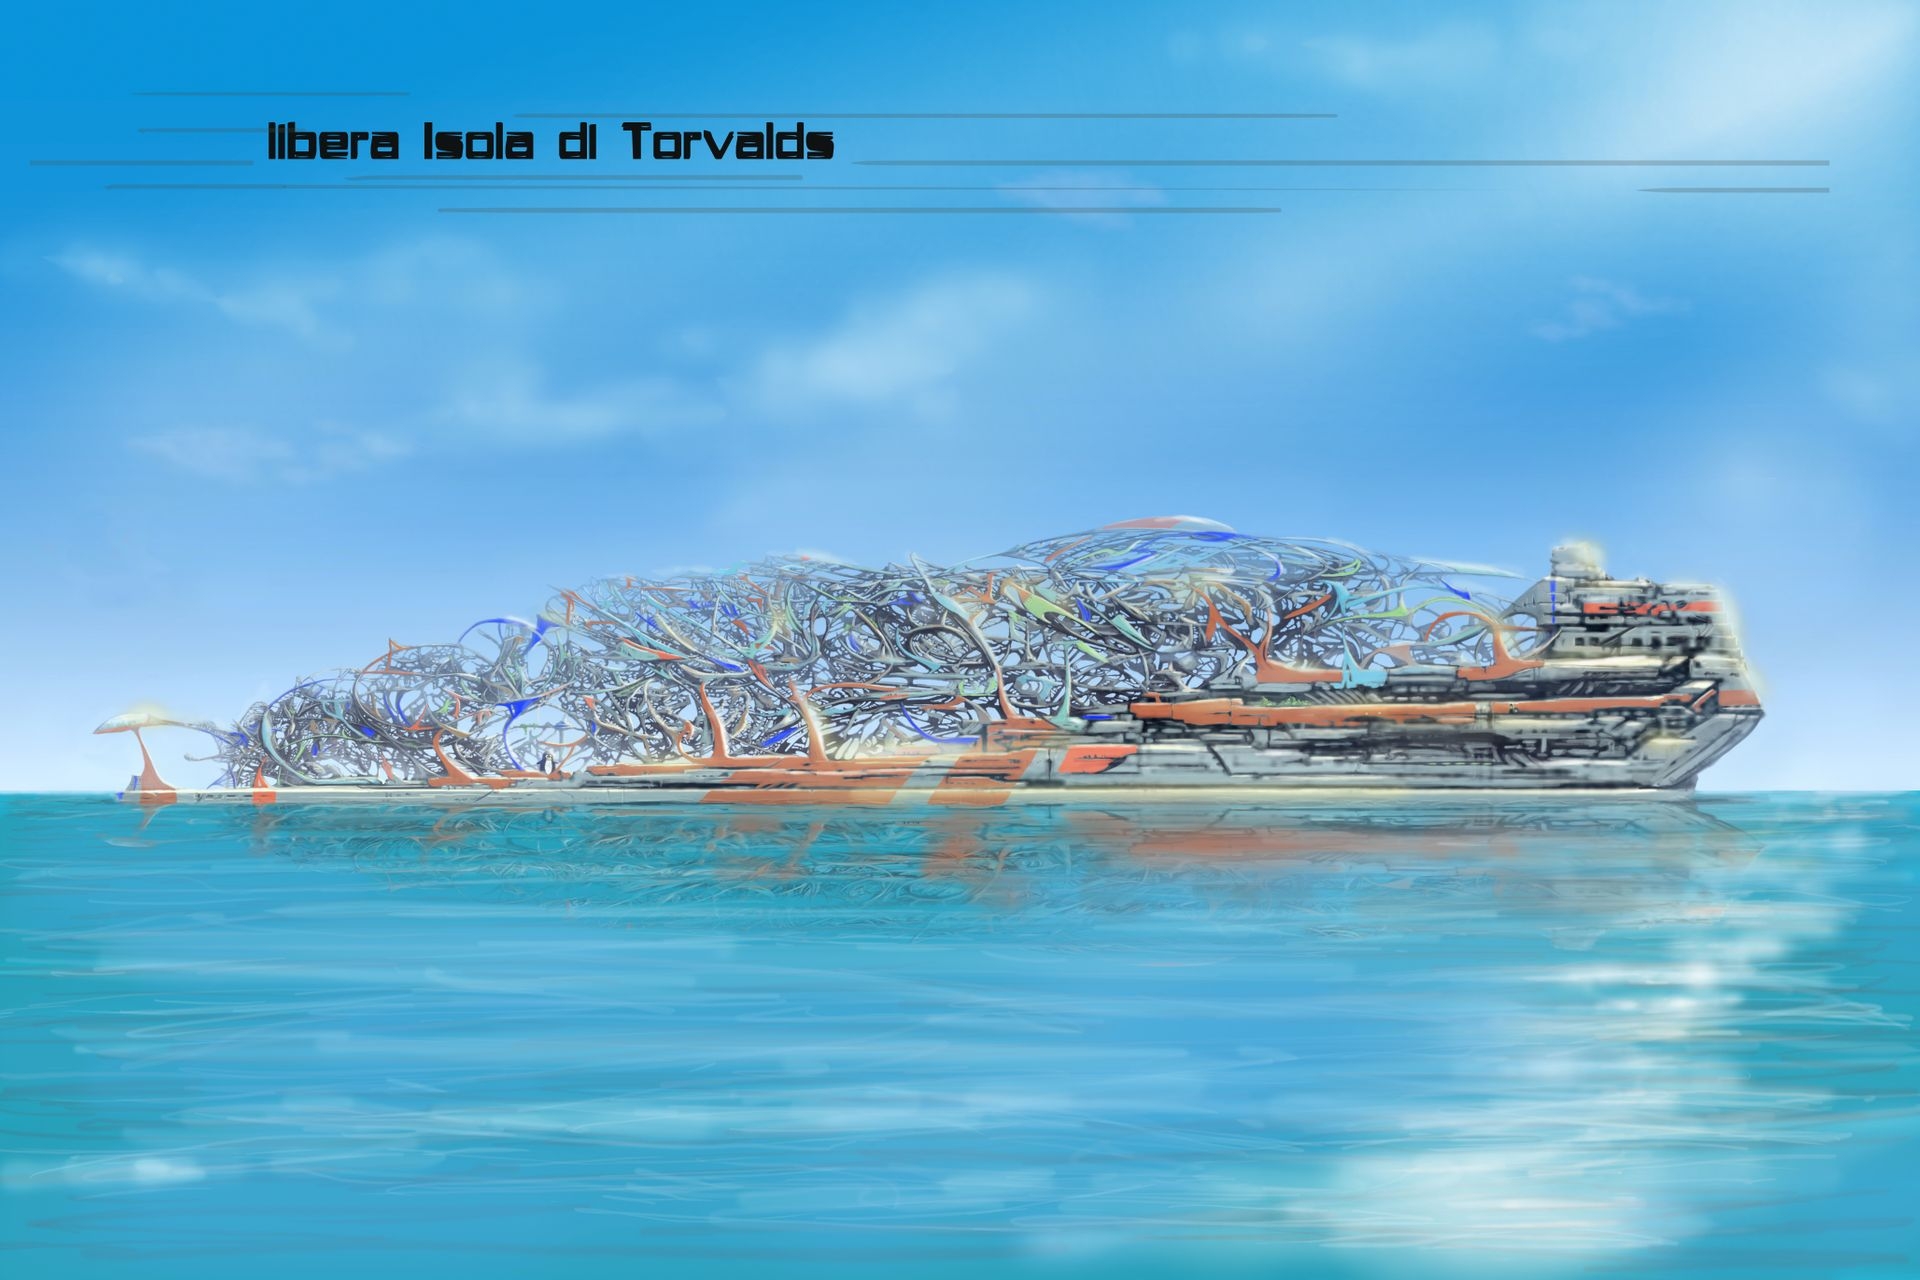 Инновациялык адабият: Эдоардо Вольпи Келлерманндын "Монтекристо долбоору - биринчи колониядагы" эркин Торвальдс аралынын иллюстрациясы